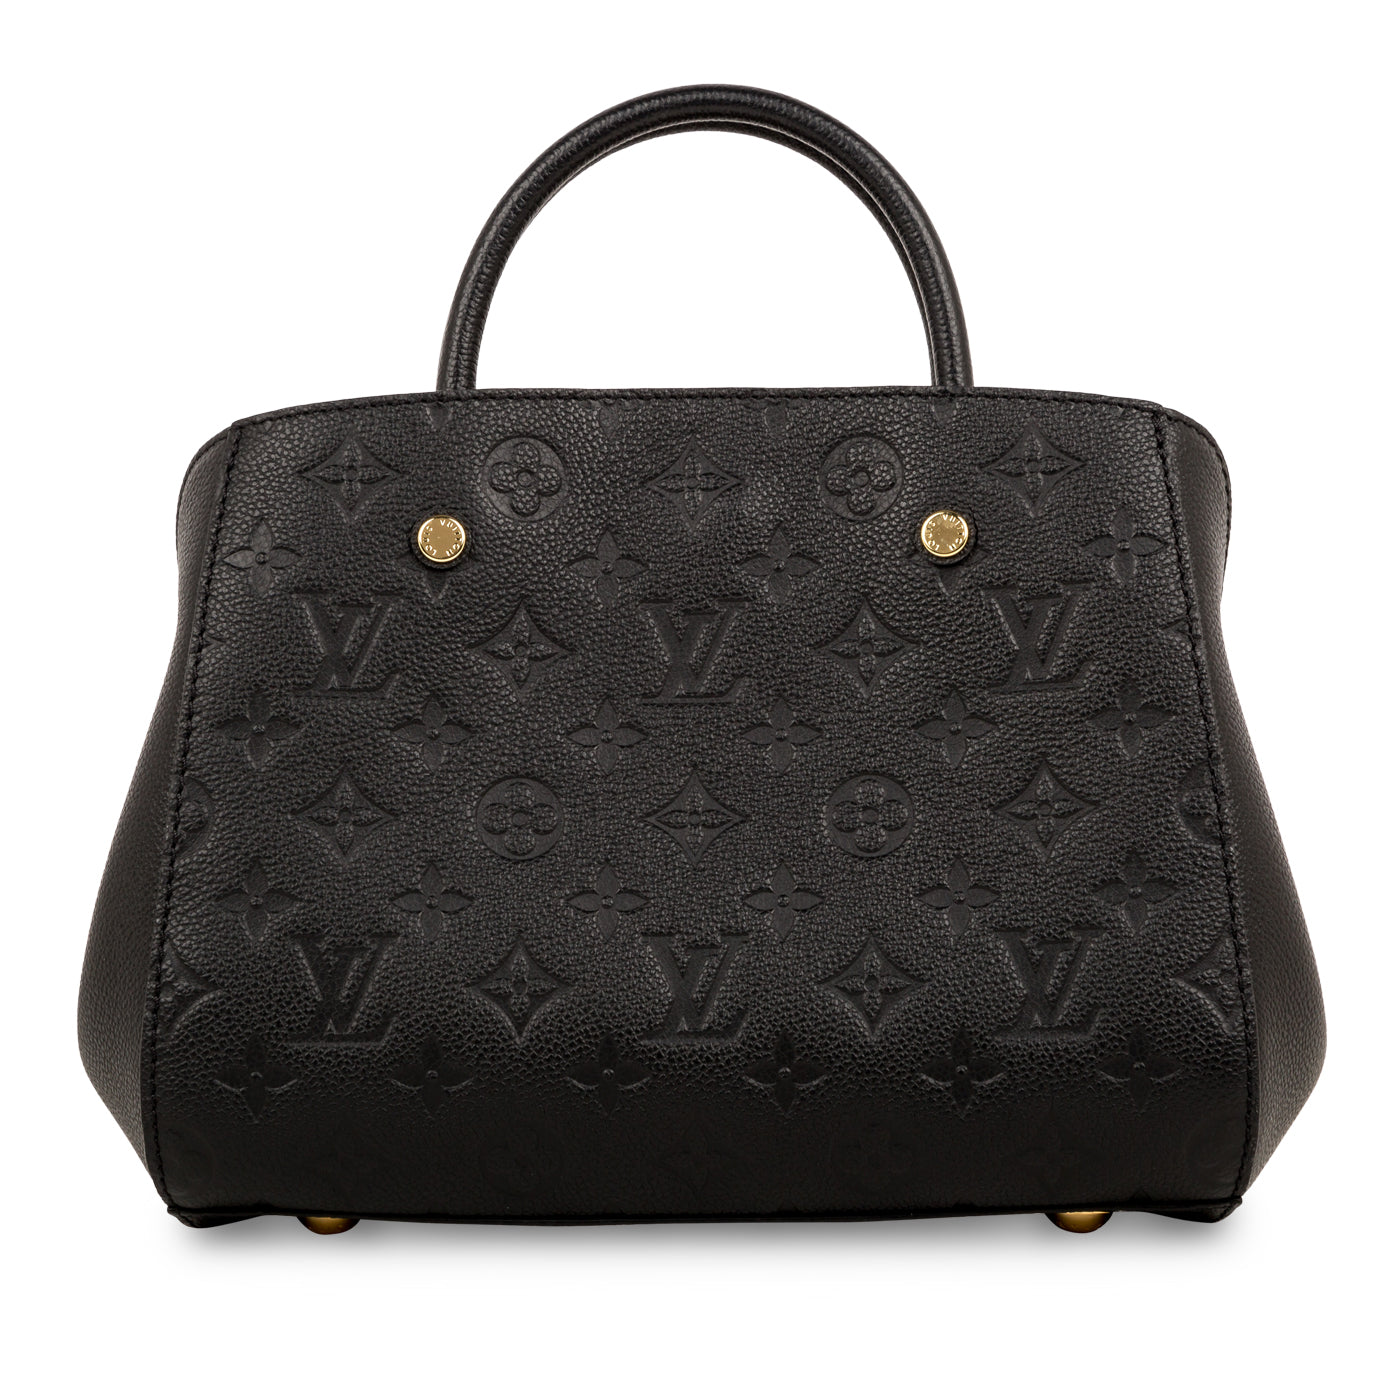 Louis Vuitton Montaigne BB Monogram Empreinte Leather Tote on SALE